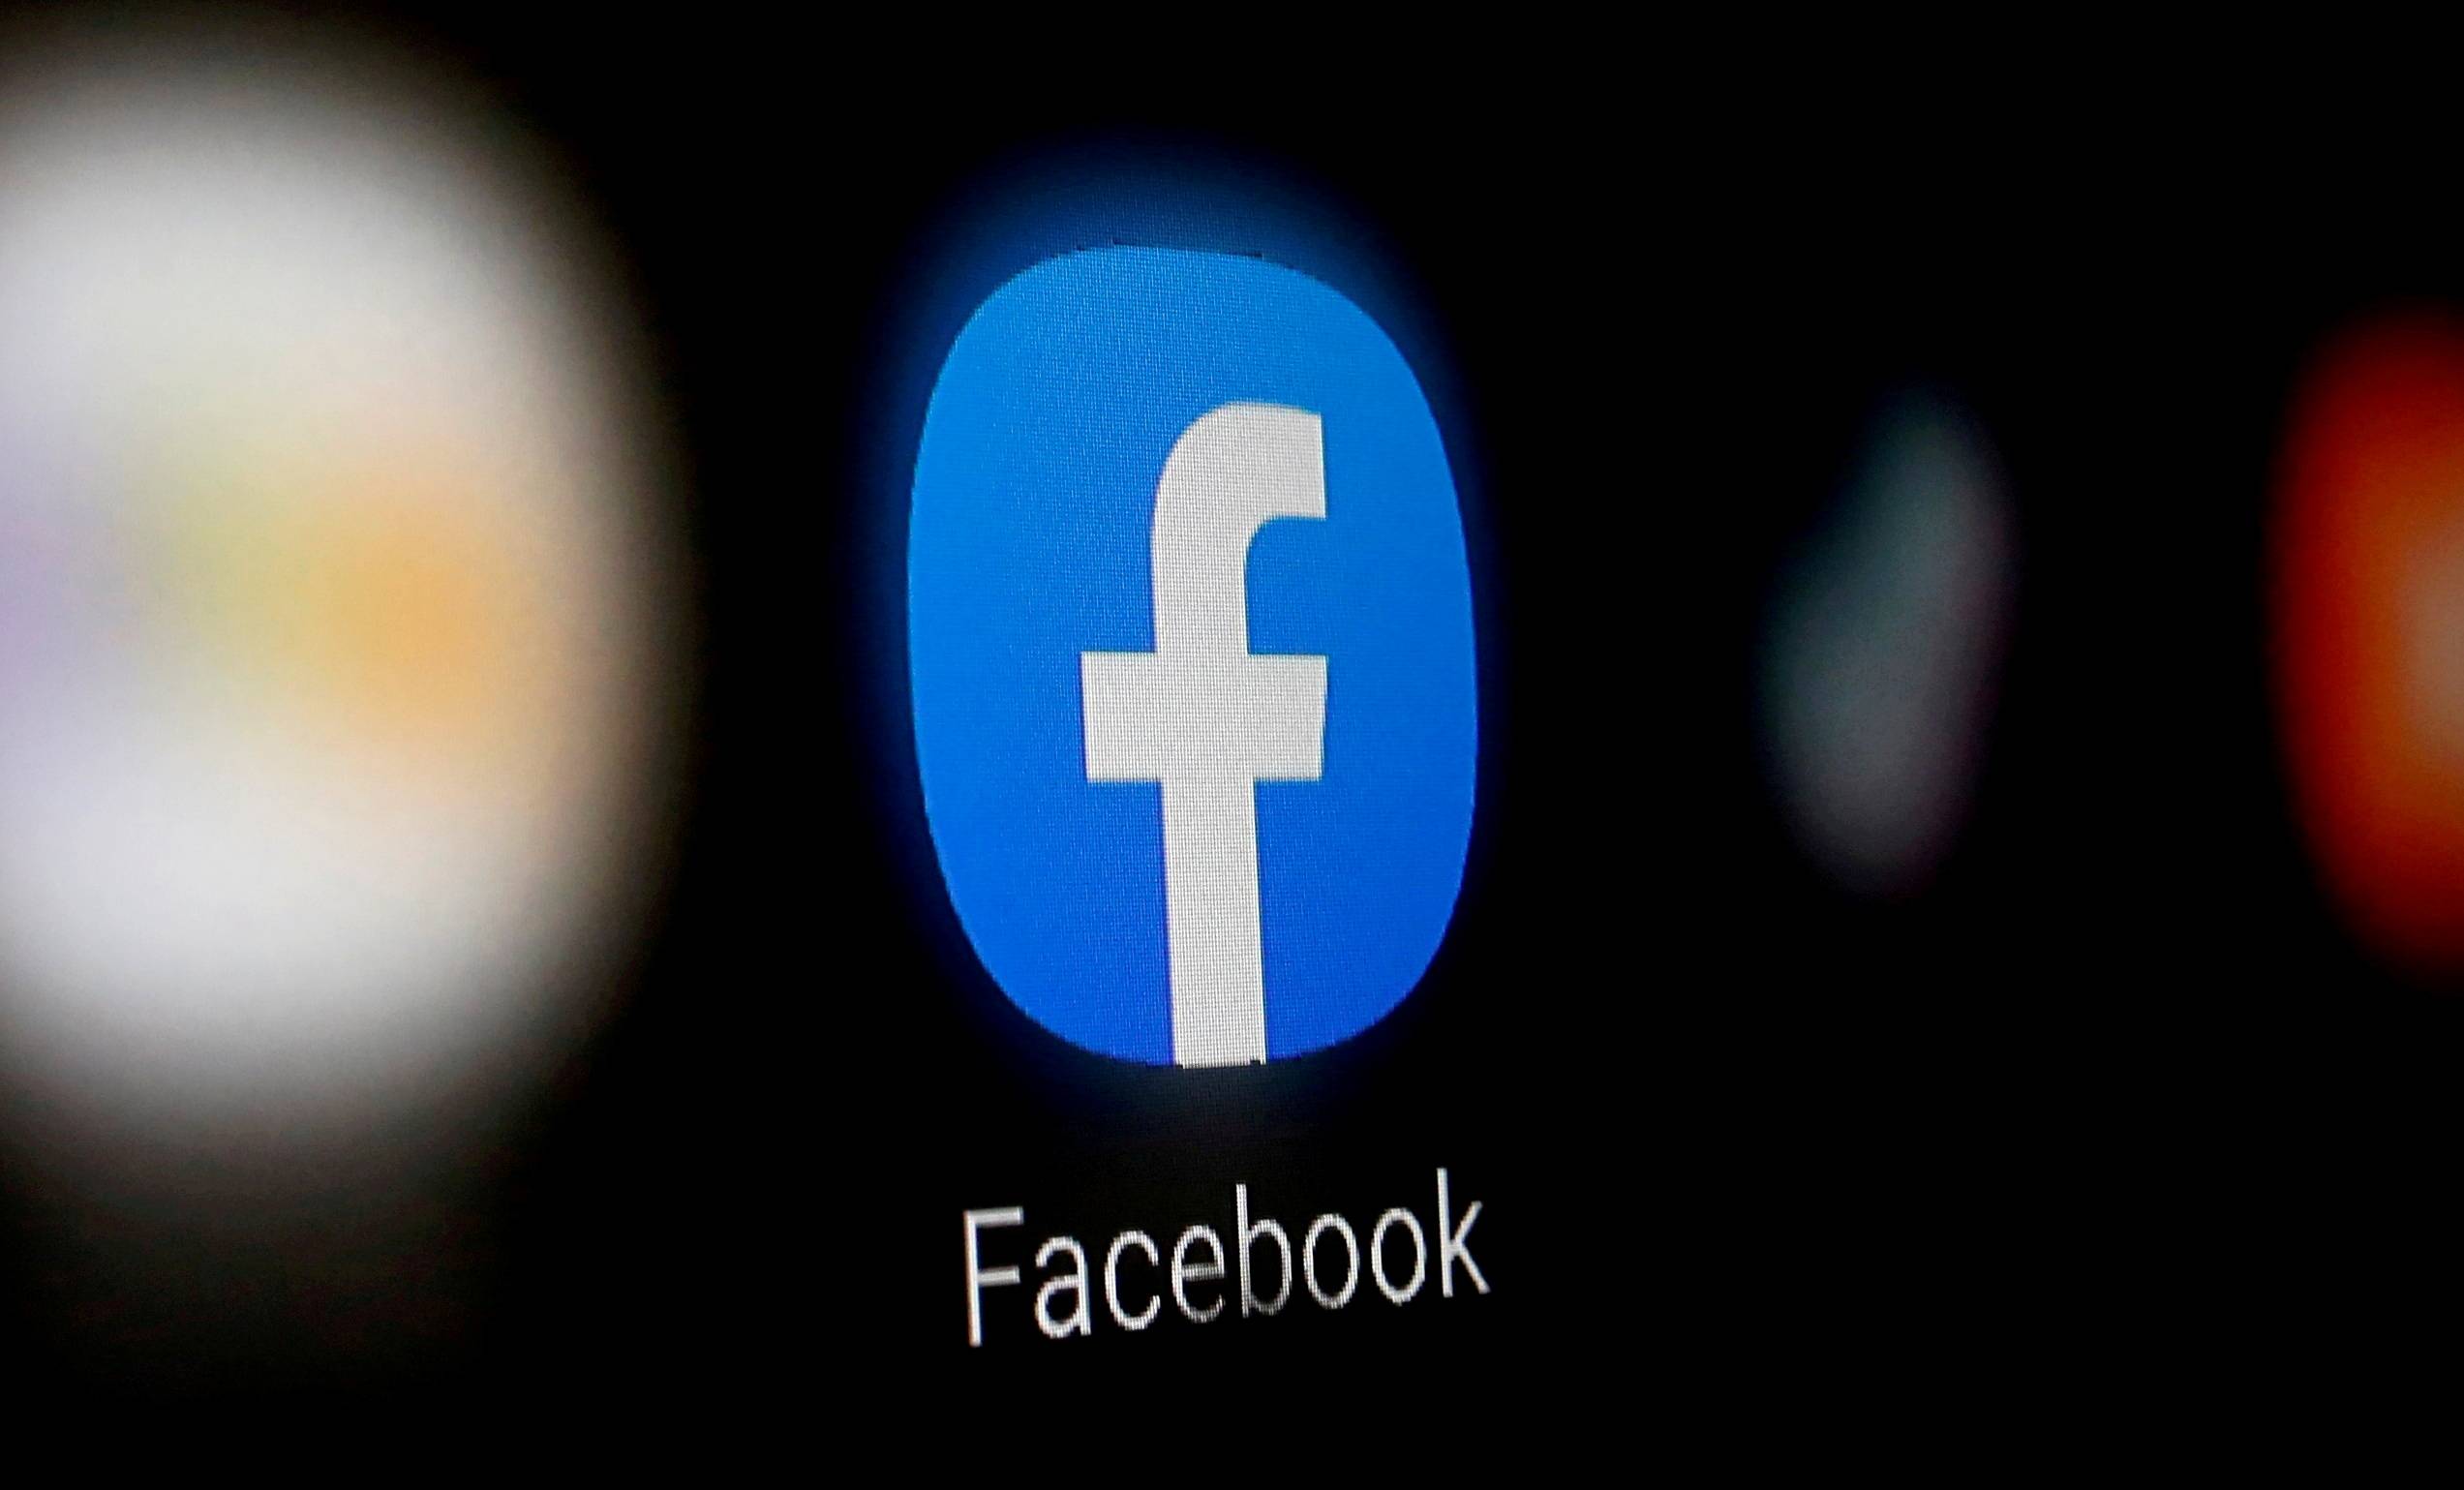  Facebook intenționează să schimbe numele companiei cu unul nou